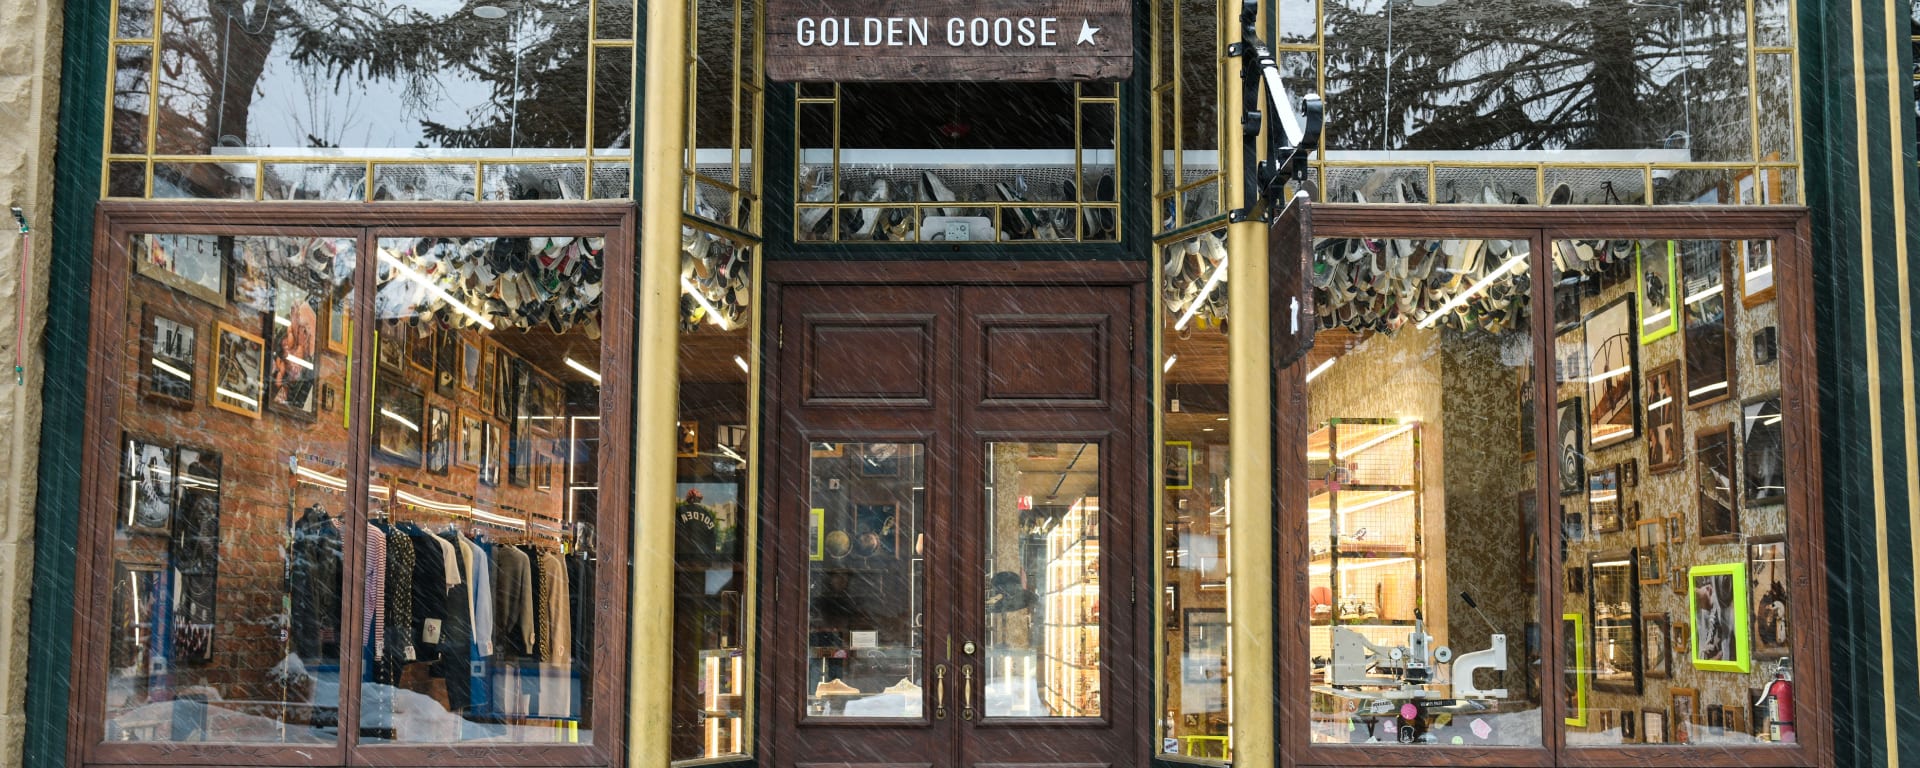 Golden Goose ASPEN FLAGSHIP STORE 1 of 4